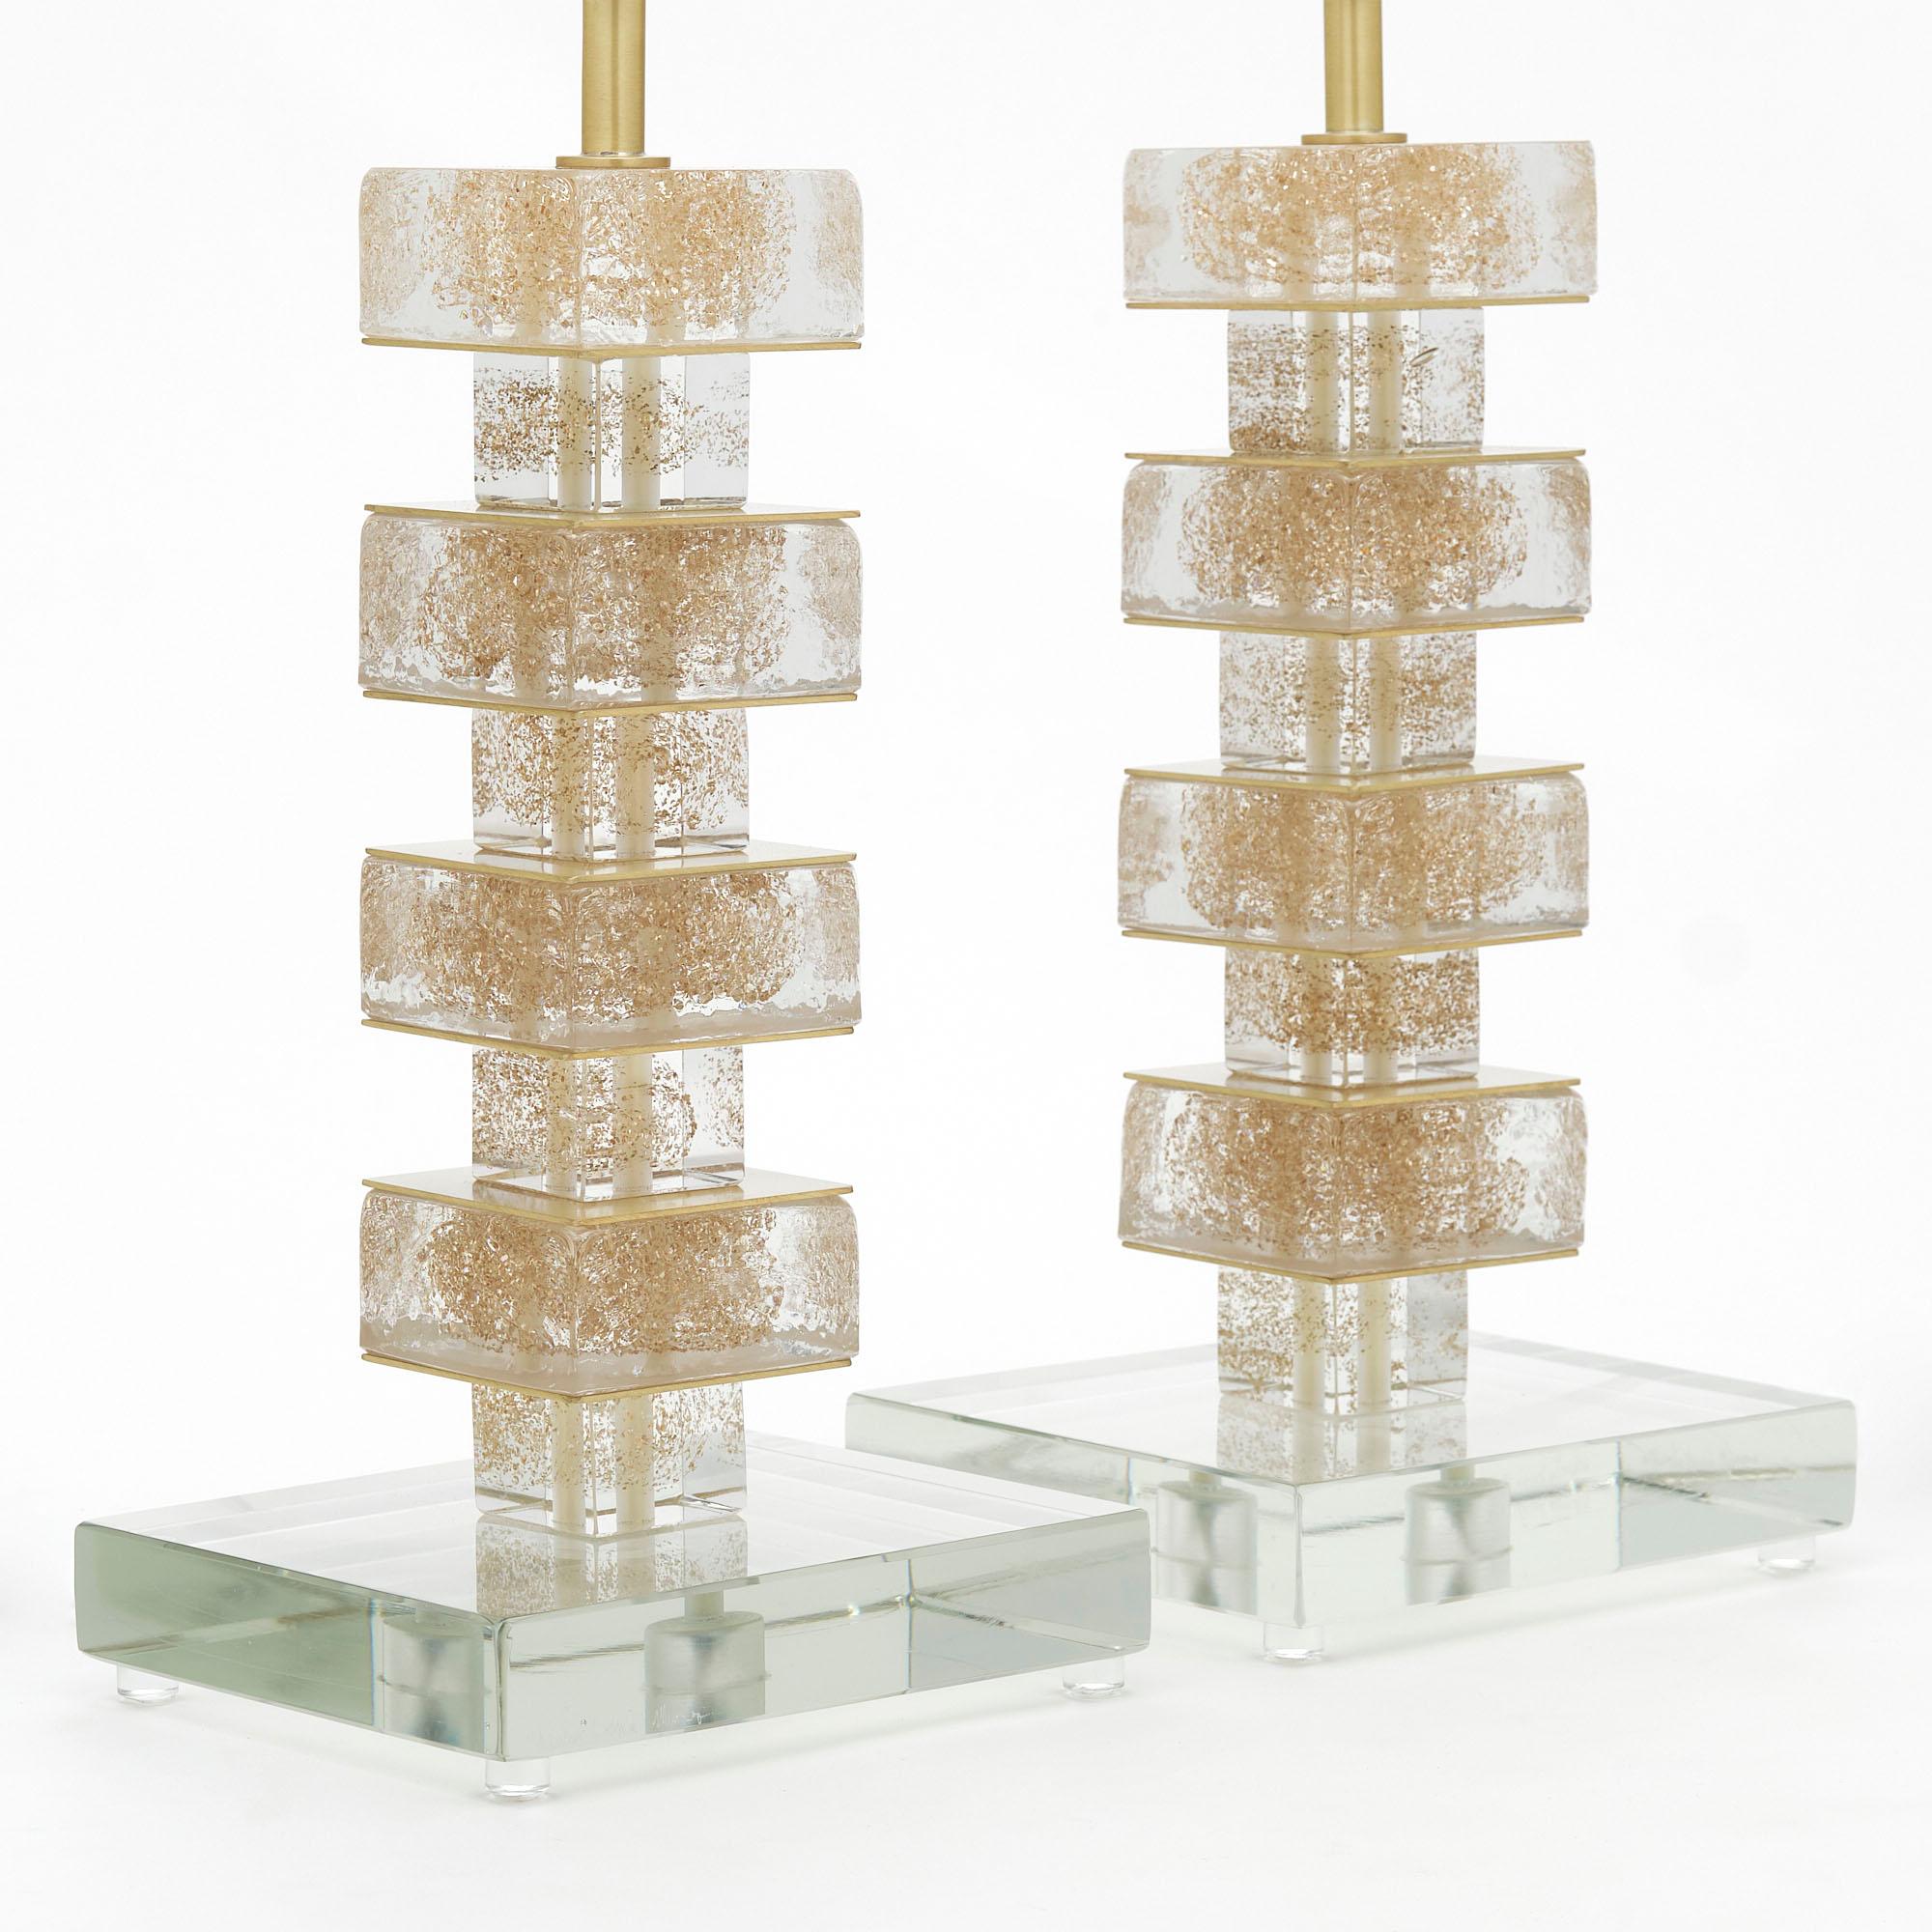 Paire de lampes italiennes provenant de l'île de Murano. Ces lampes contemporaines présentent des éléments cubiques empilés, fusionnés avec des mouchetures d'or 24 carats. Ils ont été nouvellement câblés aux normes américaines.